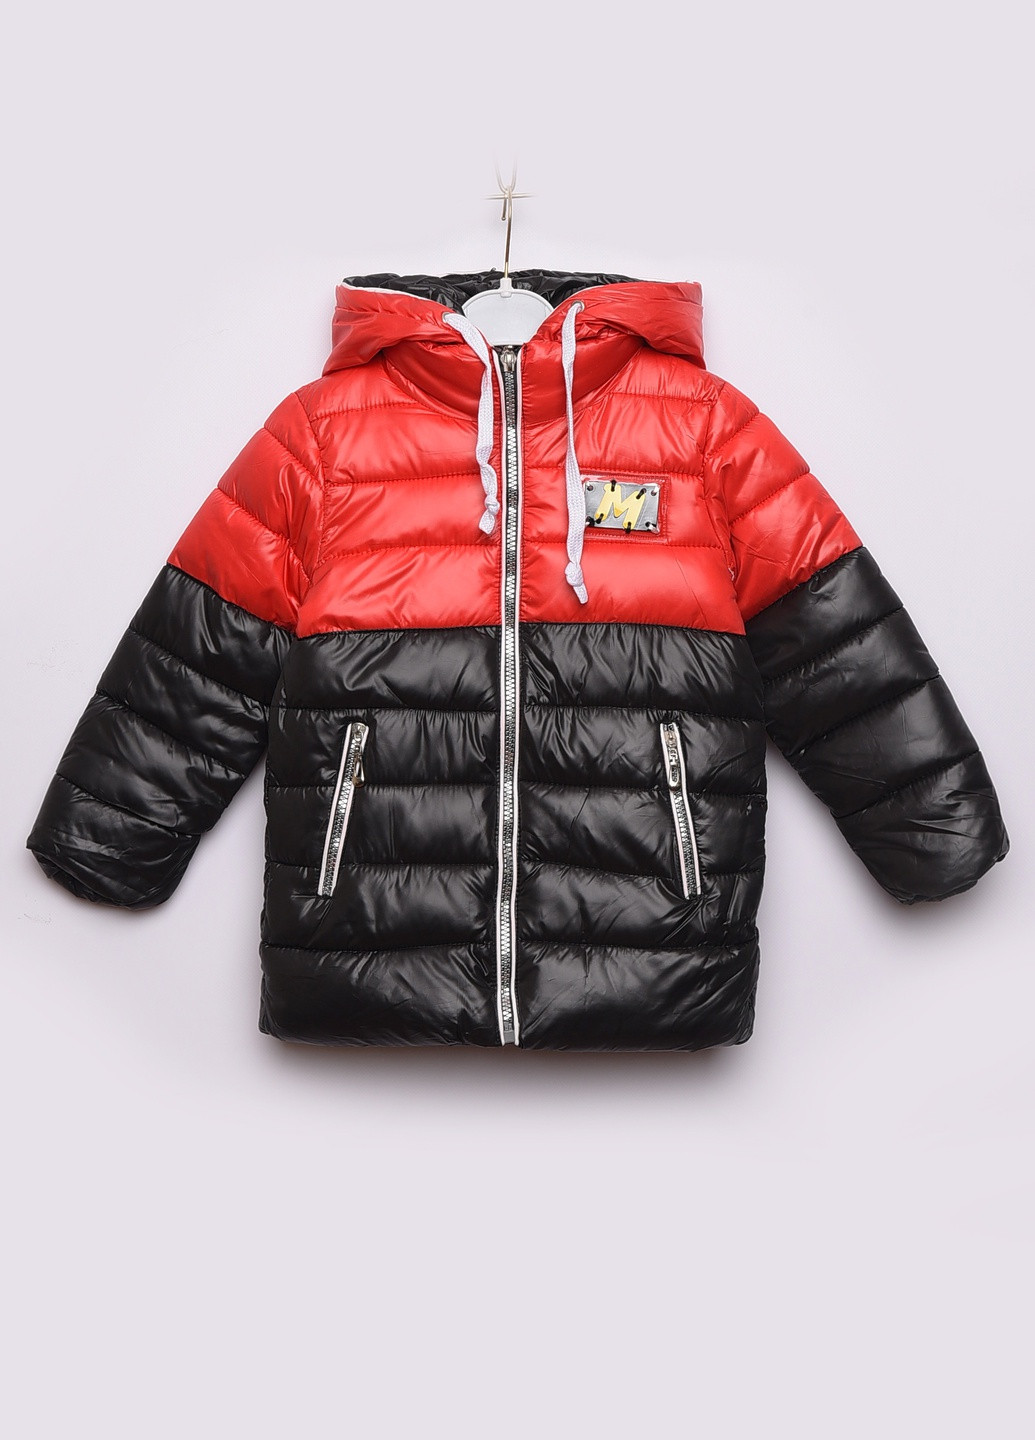 Красная демисезонная куртка детская демисезон красно - черная с капюшоном Let's Shop